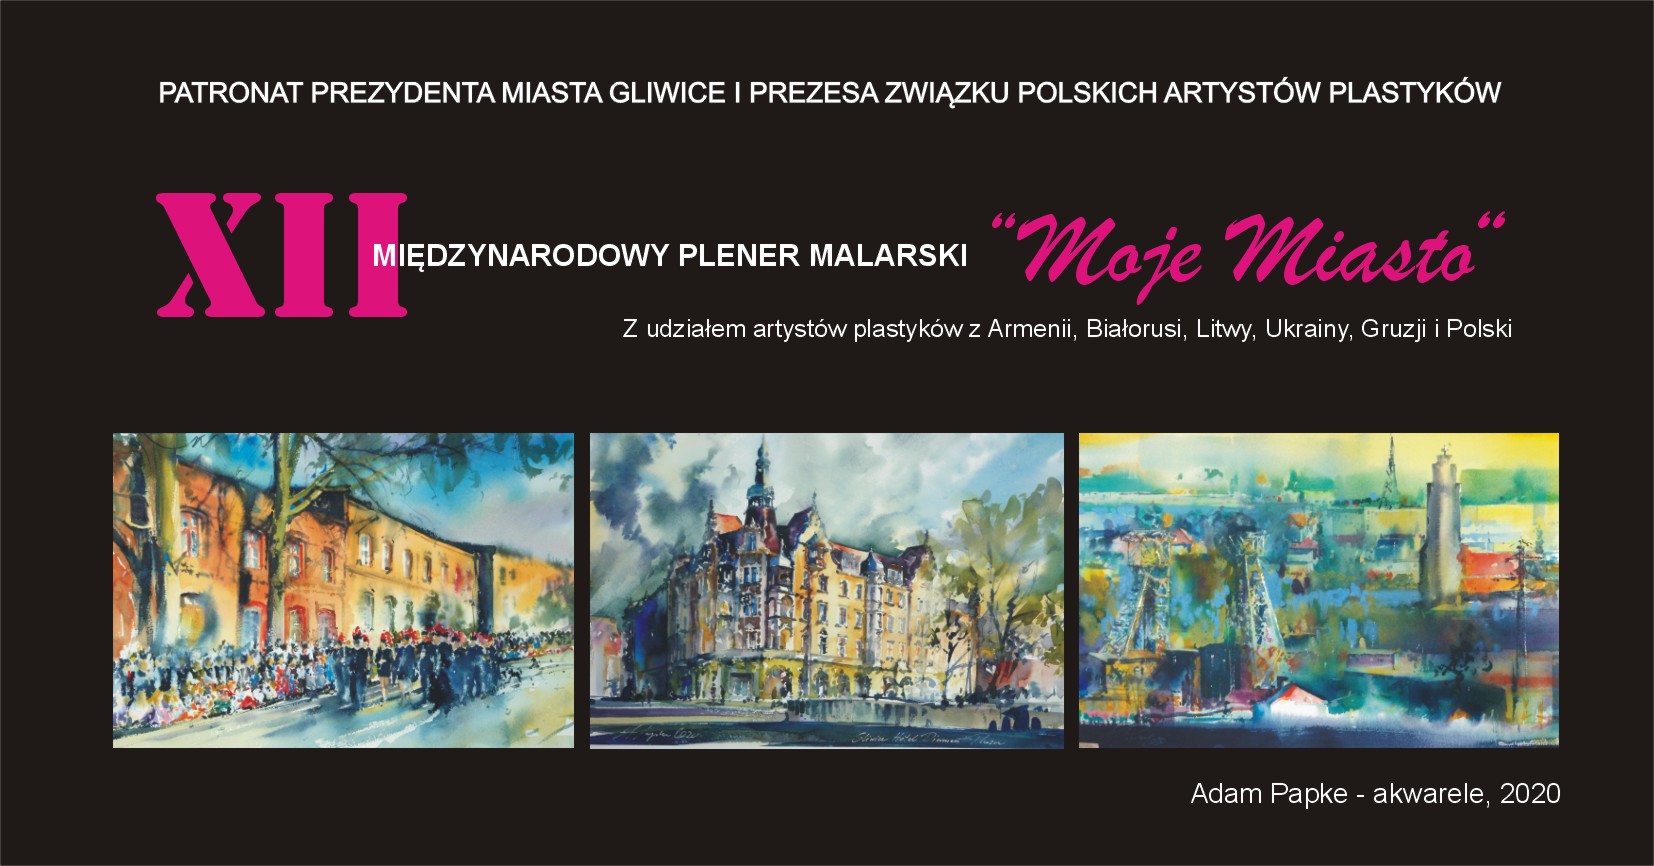 XII Międzynarodowy Plener Malarski "Moje Miasto" - Gliwice 2021 - wystawa poplenerowa